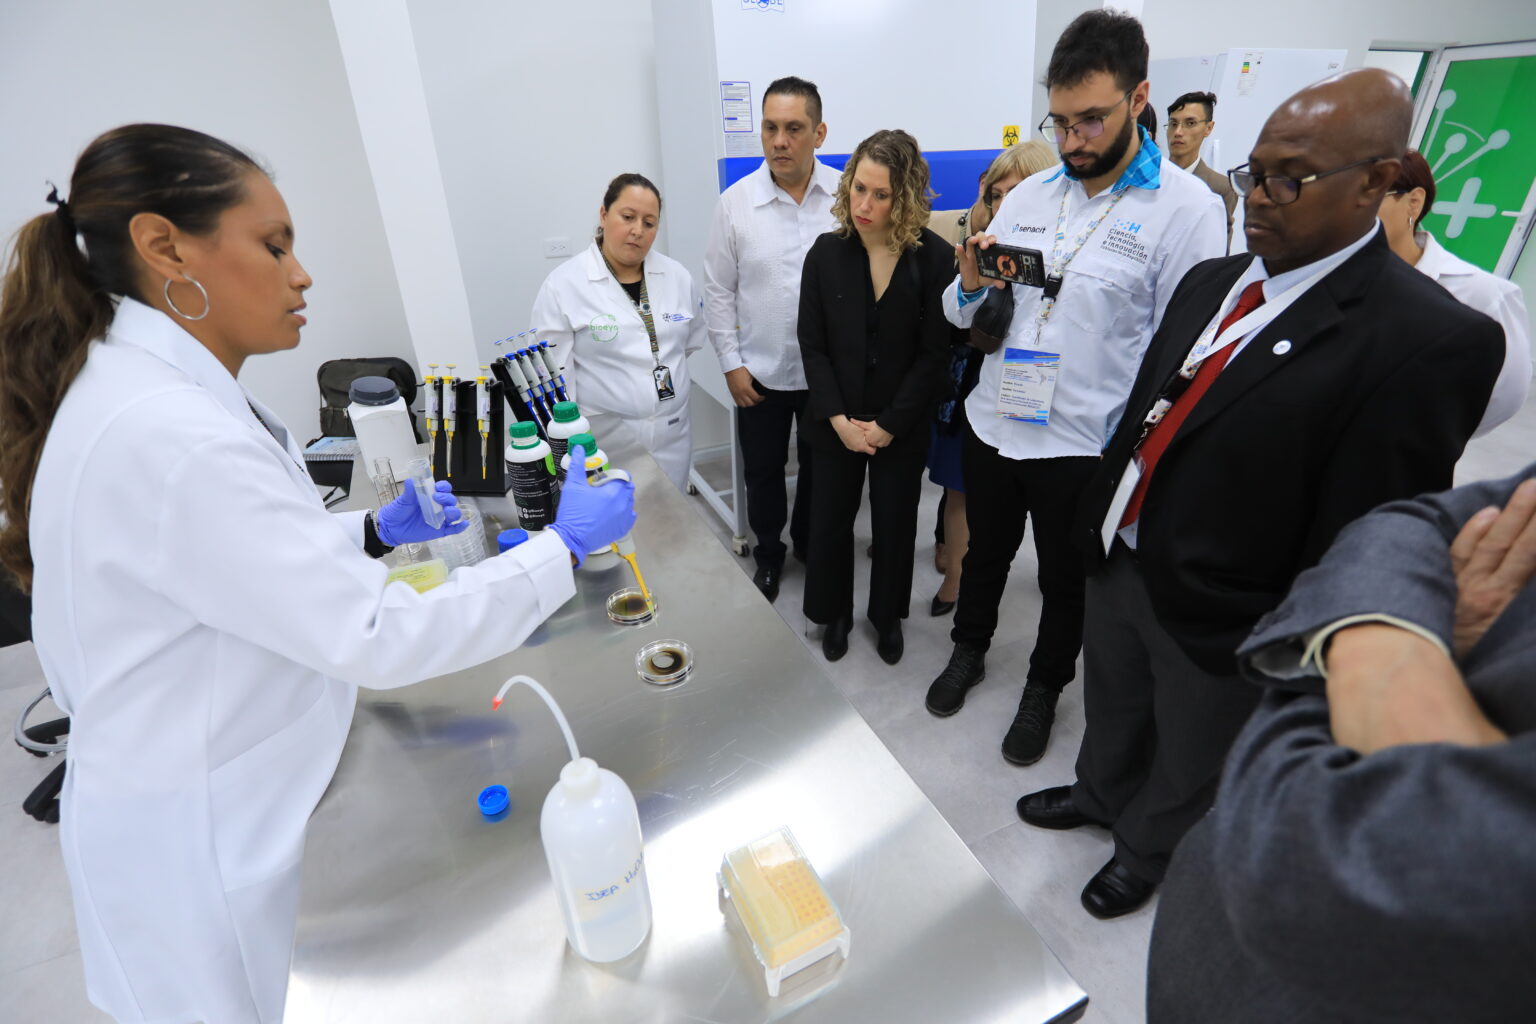 Delegados de la CELAC visitaron instalaciones del Parque Científico Tecnológico de Venezuela + Ciencia